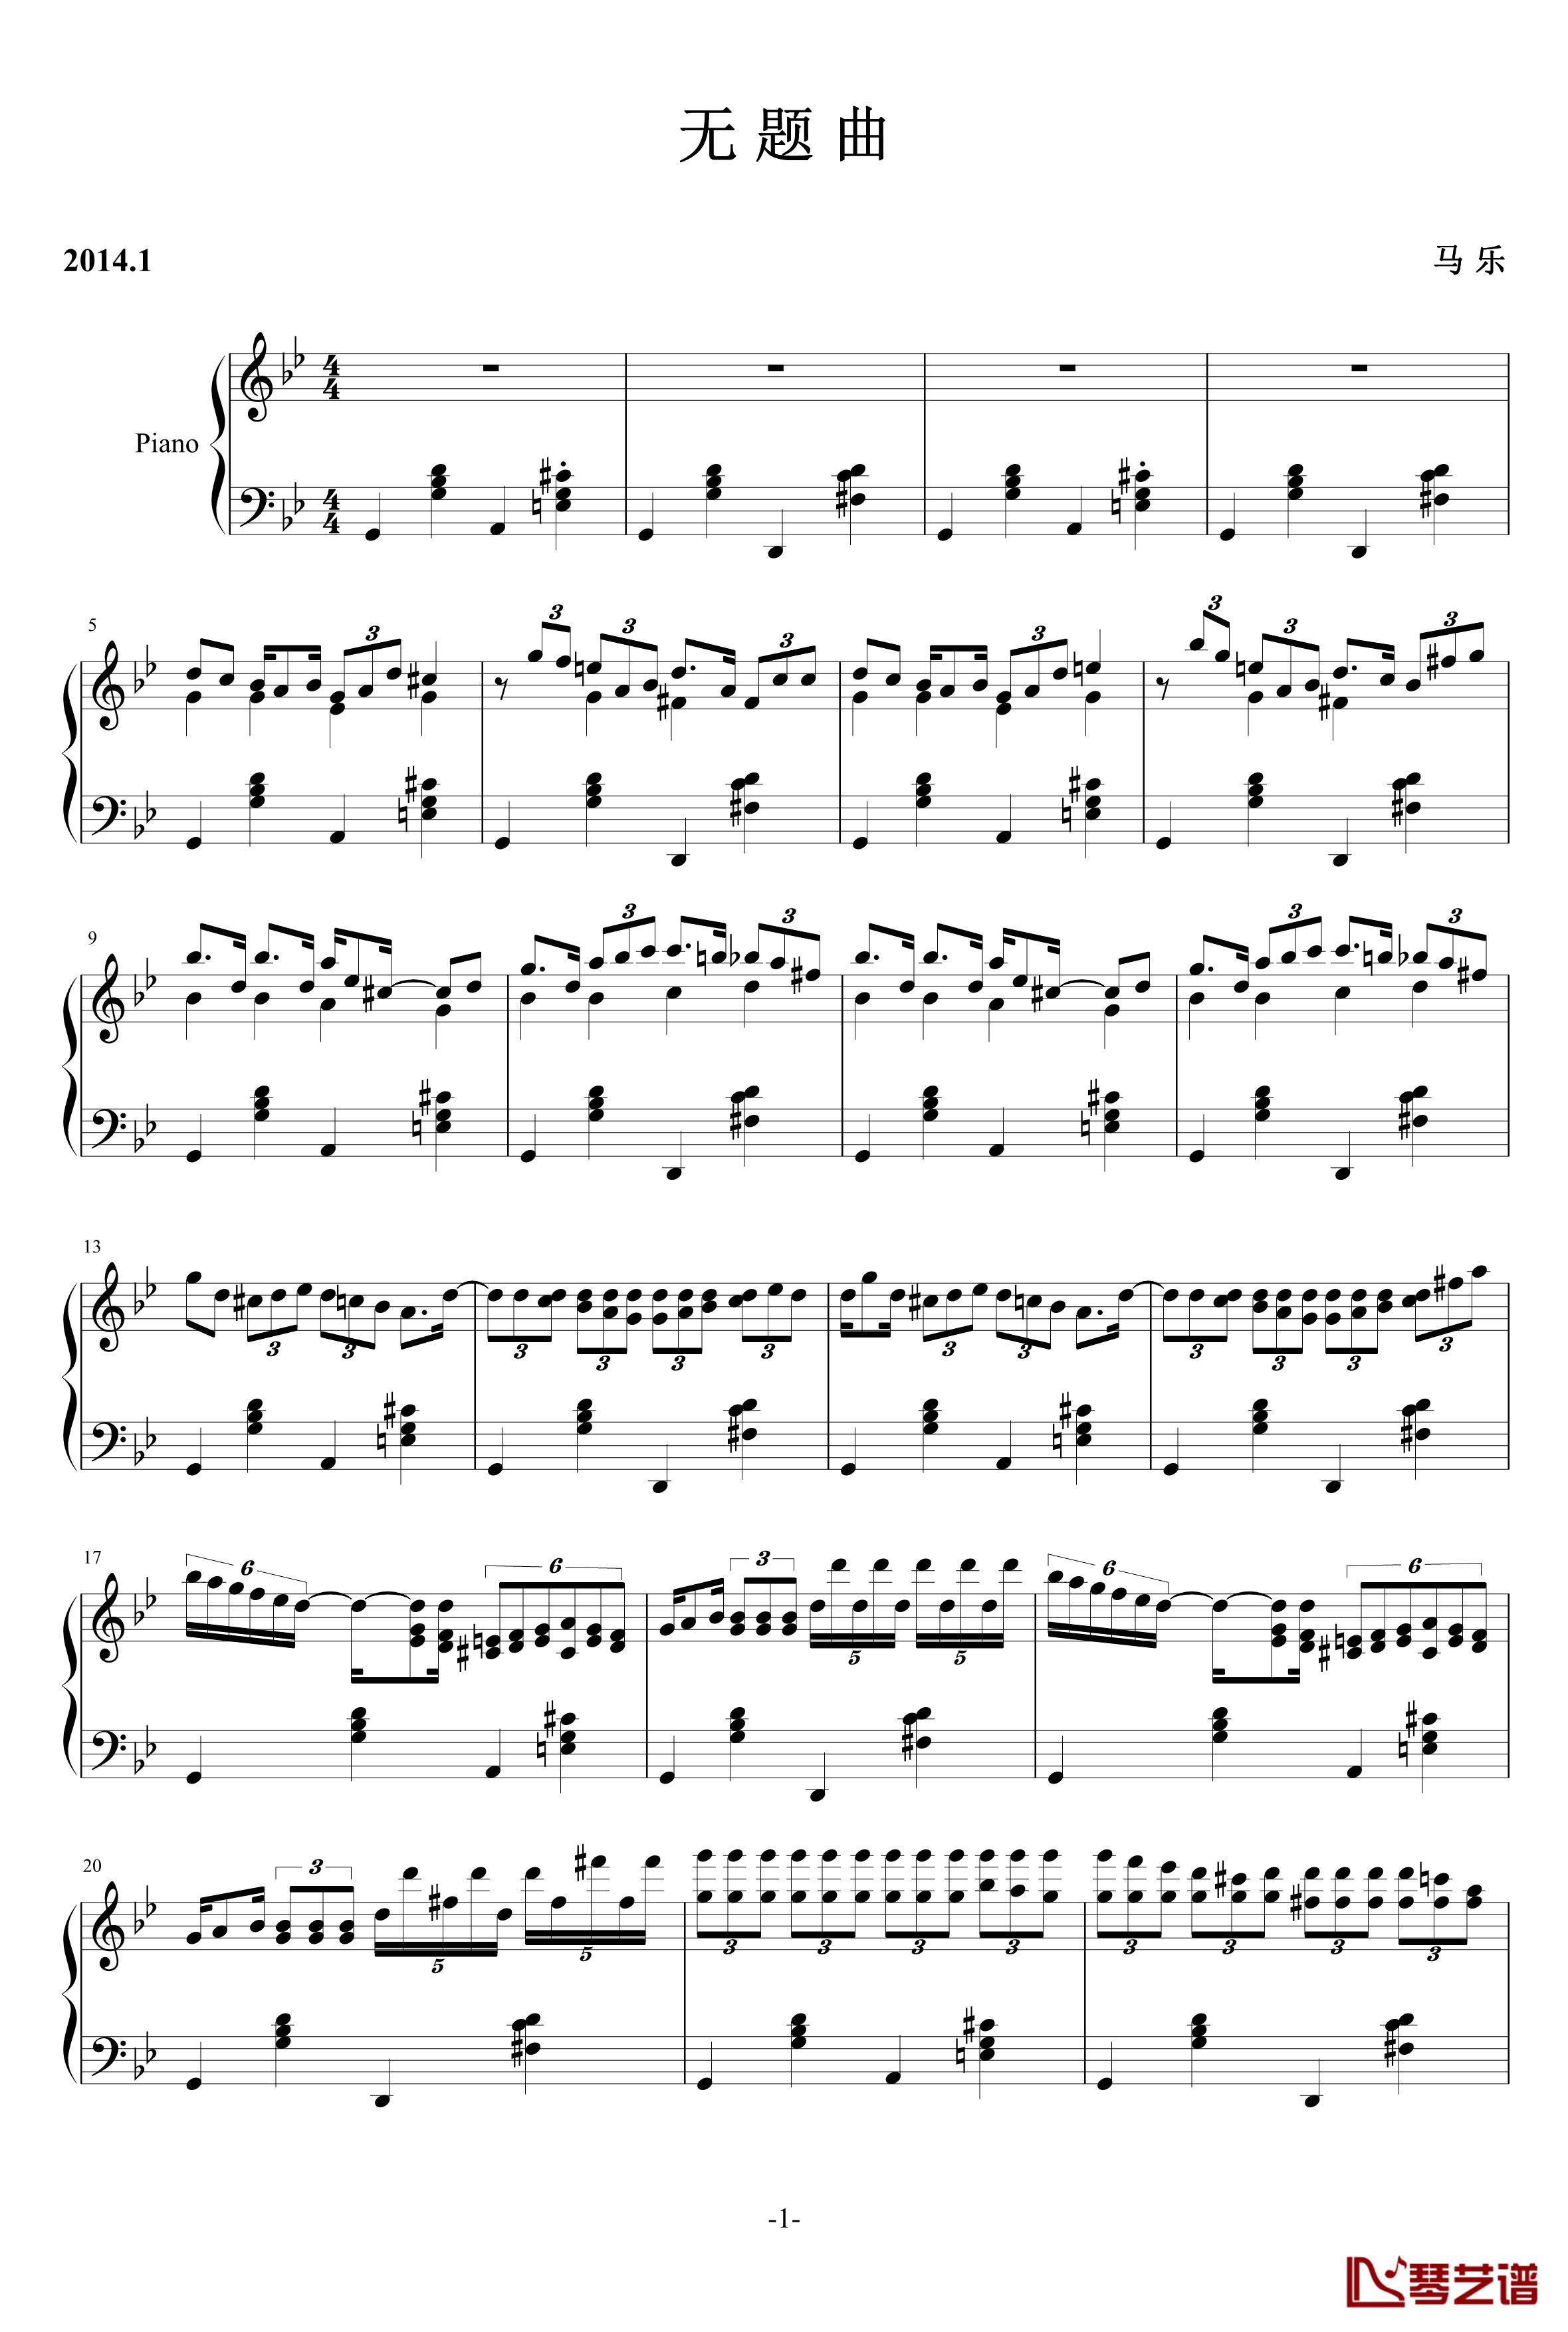 无题曲钢琴谱-乐之琴1